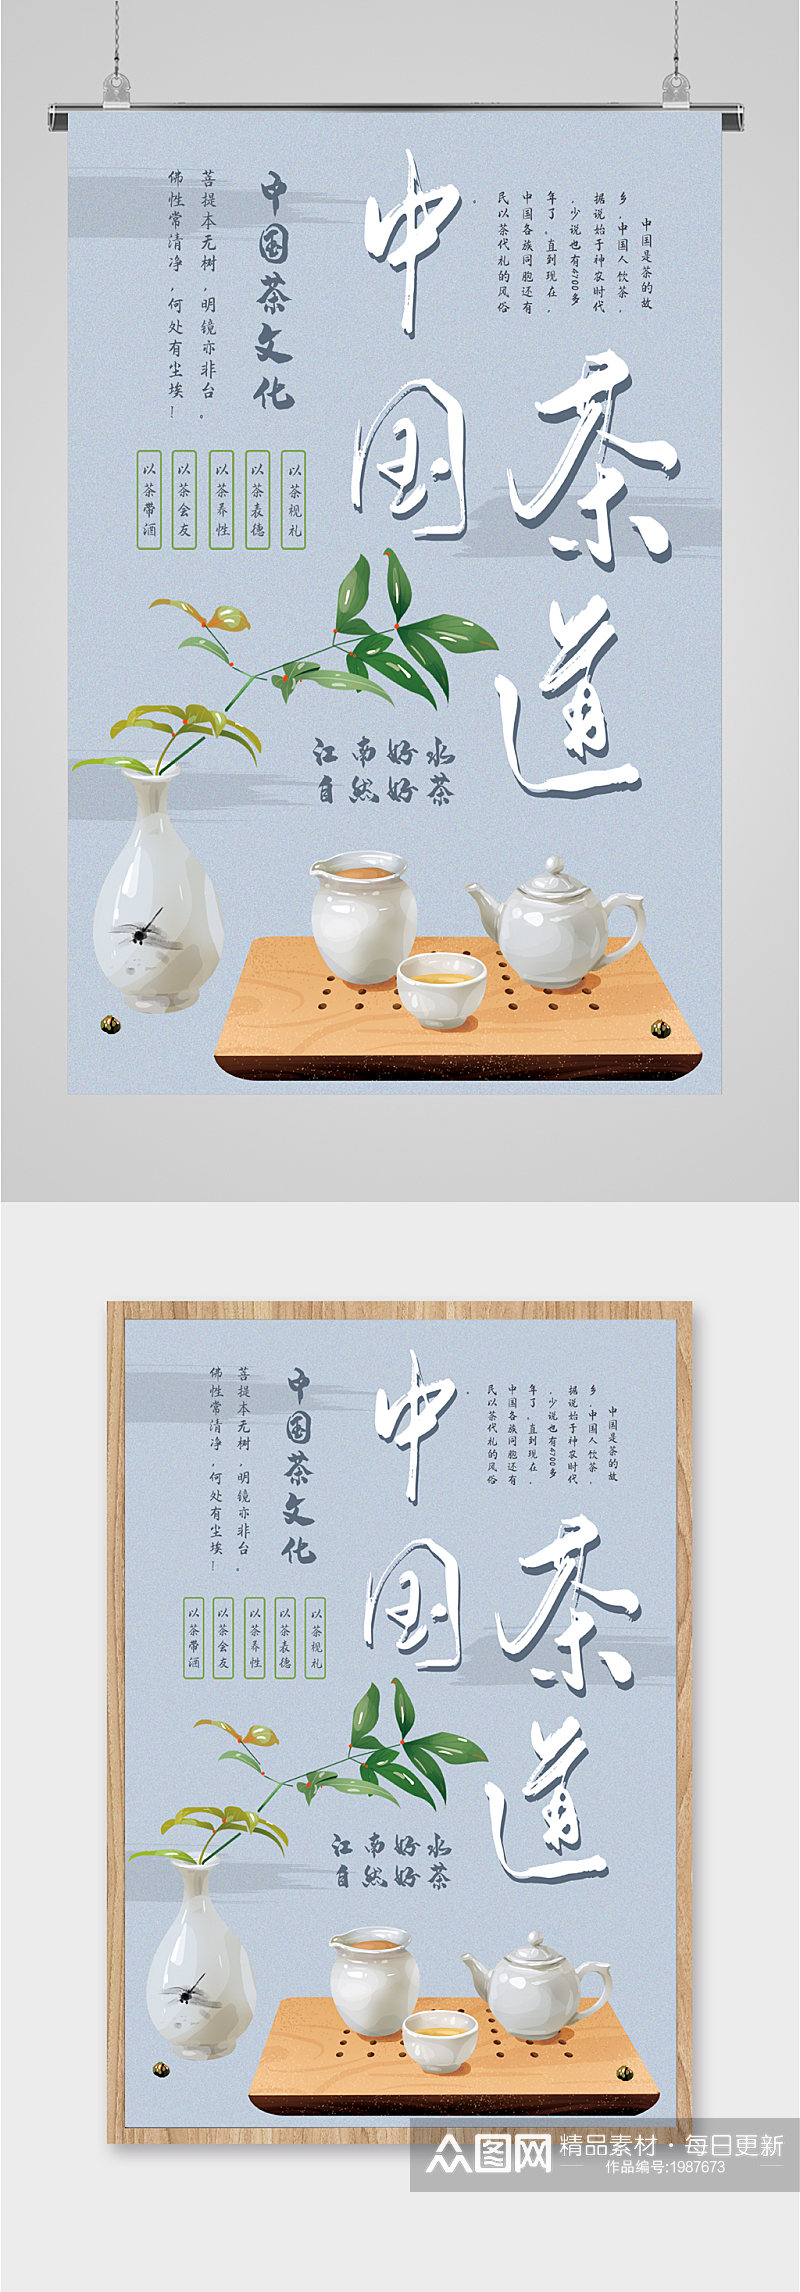 中国茶道宣传海报素材